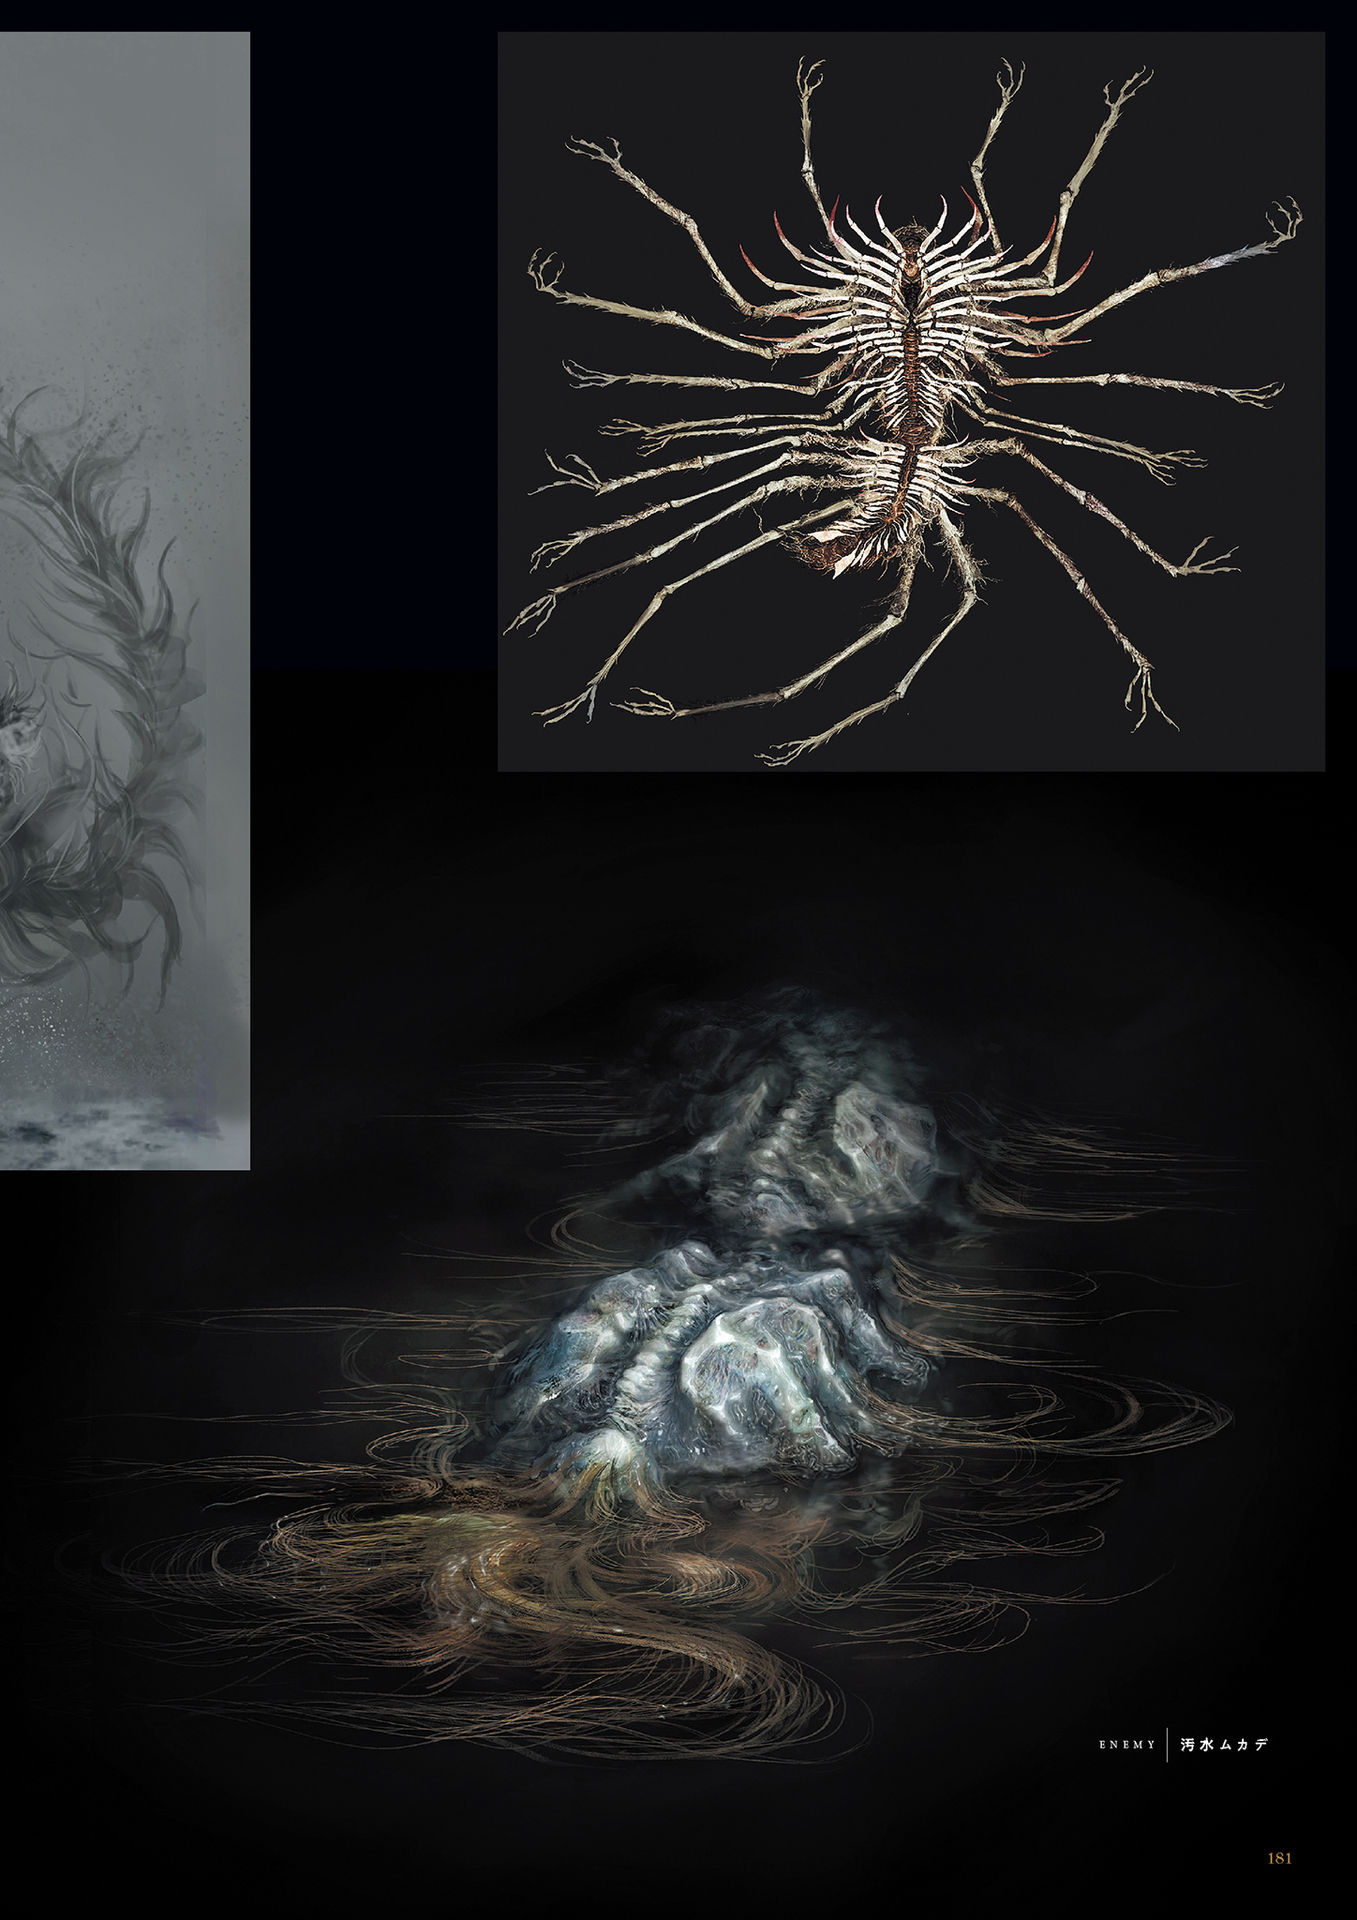 Sewer_Centipede_Concept_Artbook.jpg